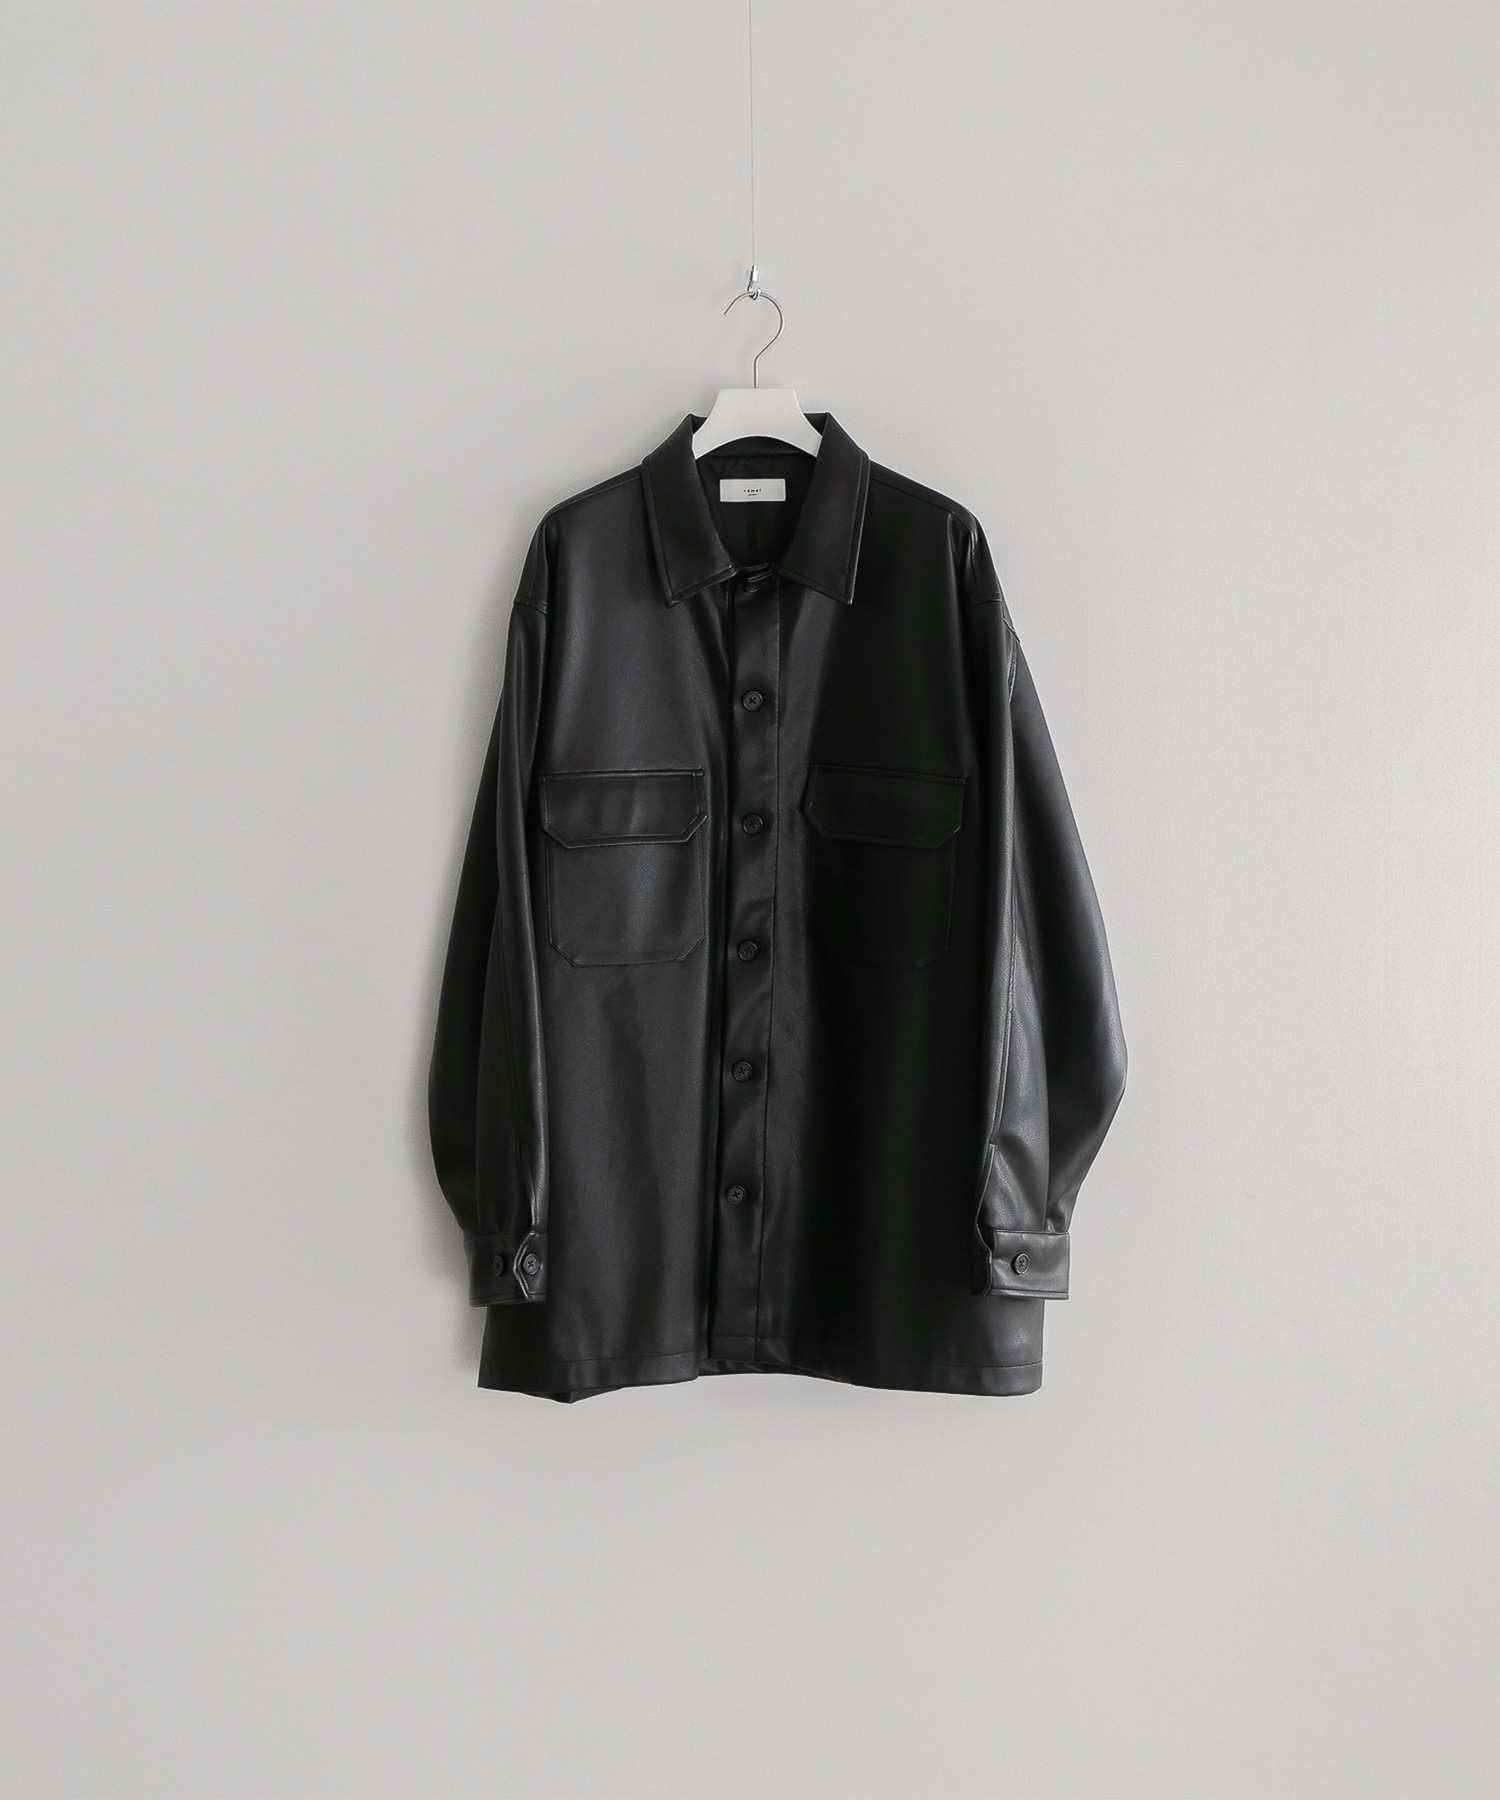 remerloose 買い物 CPO 高価値 leather jacket ルーズCPOレザージャケット